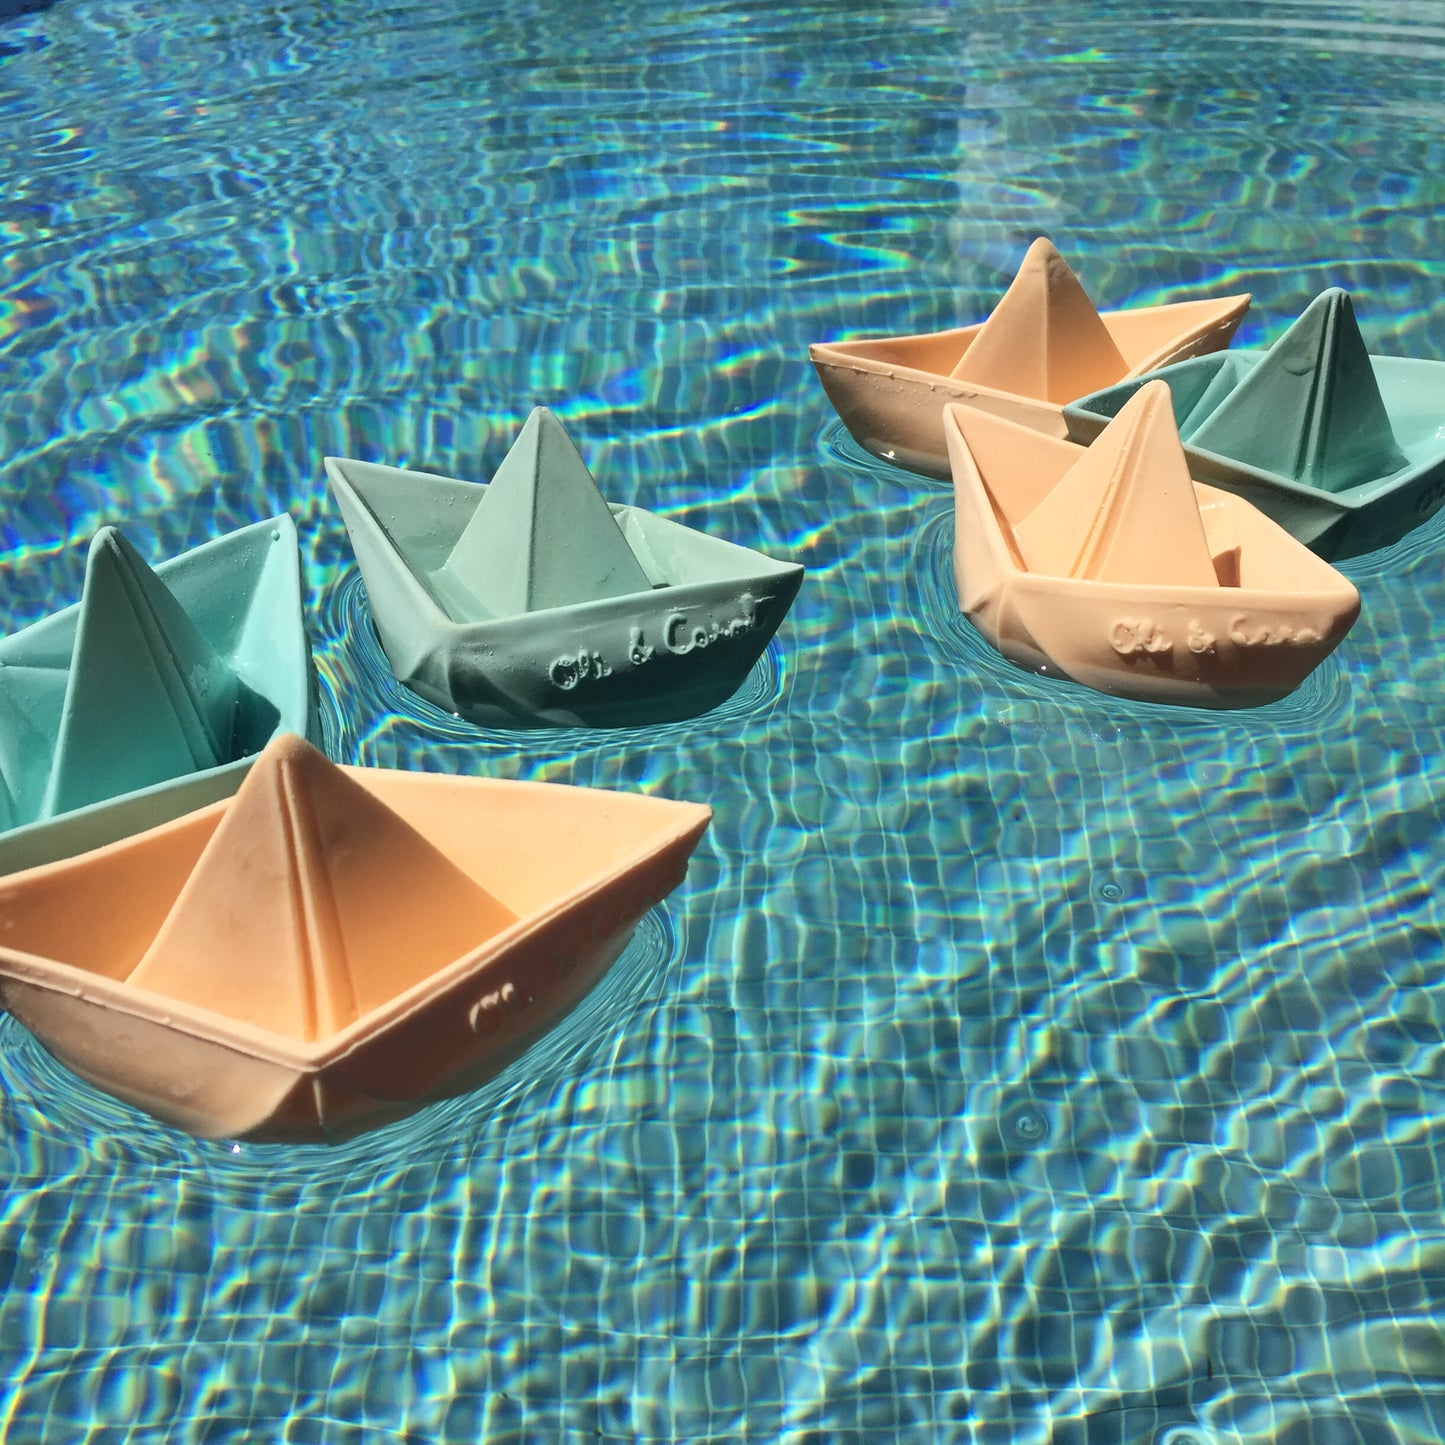 Badespielzeug Origami-Boot mint, Oli&Carol